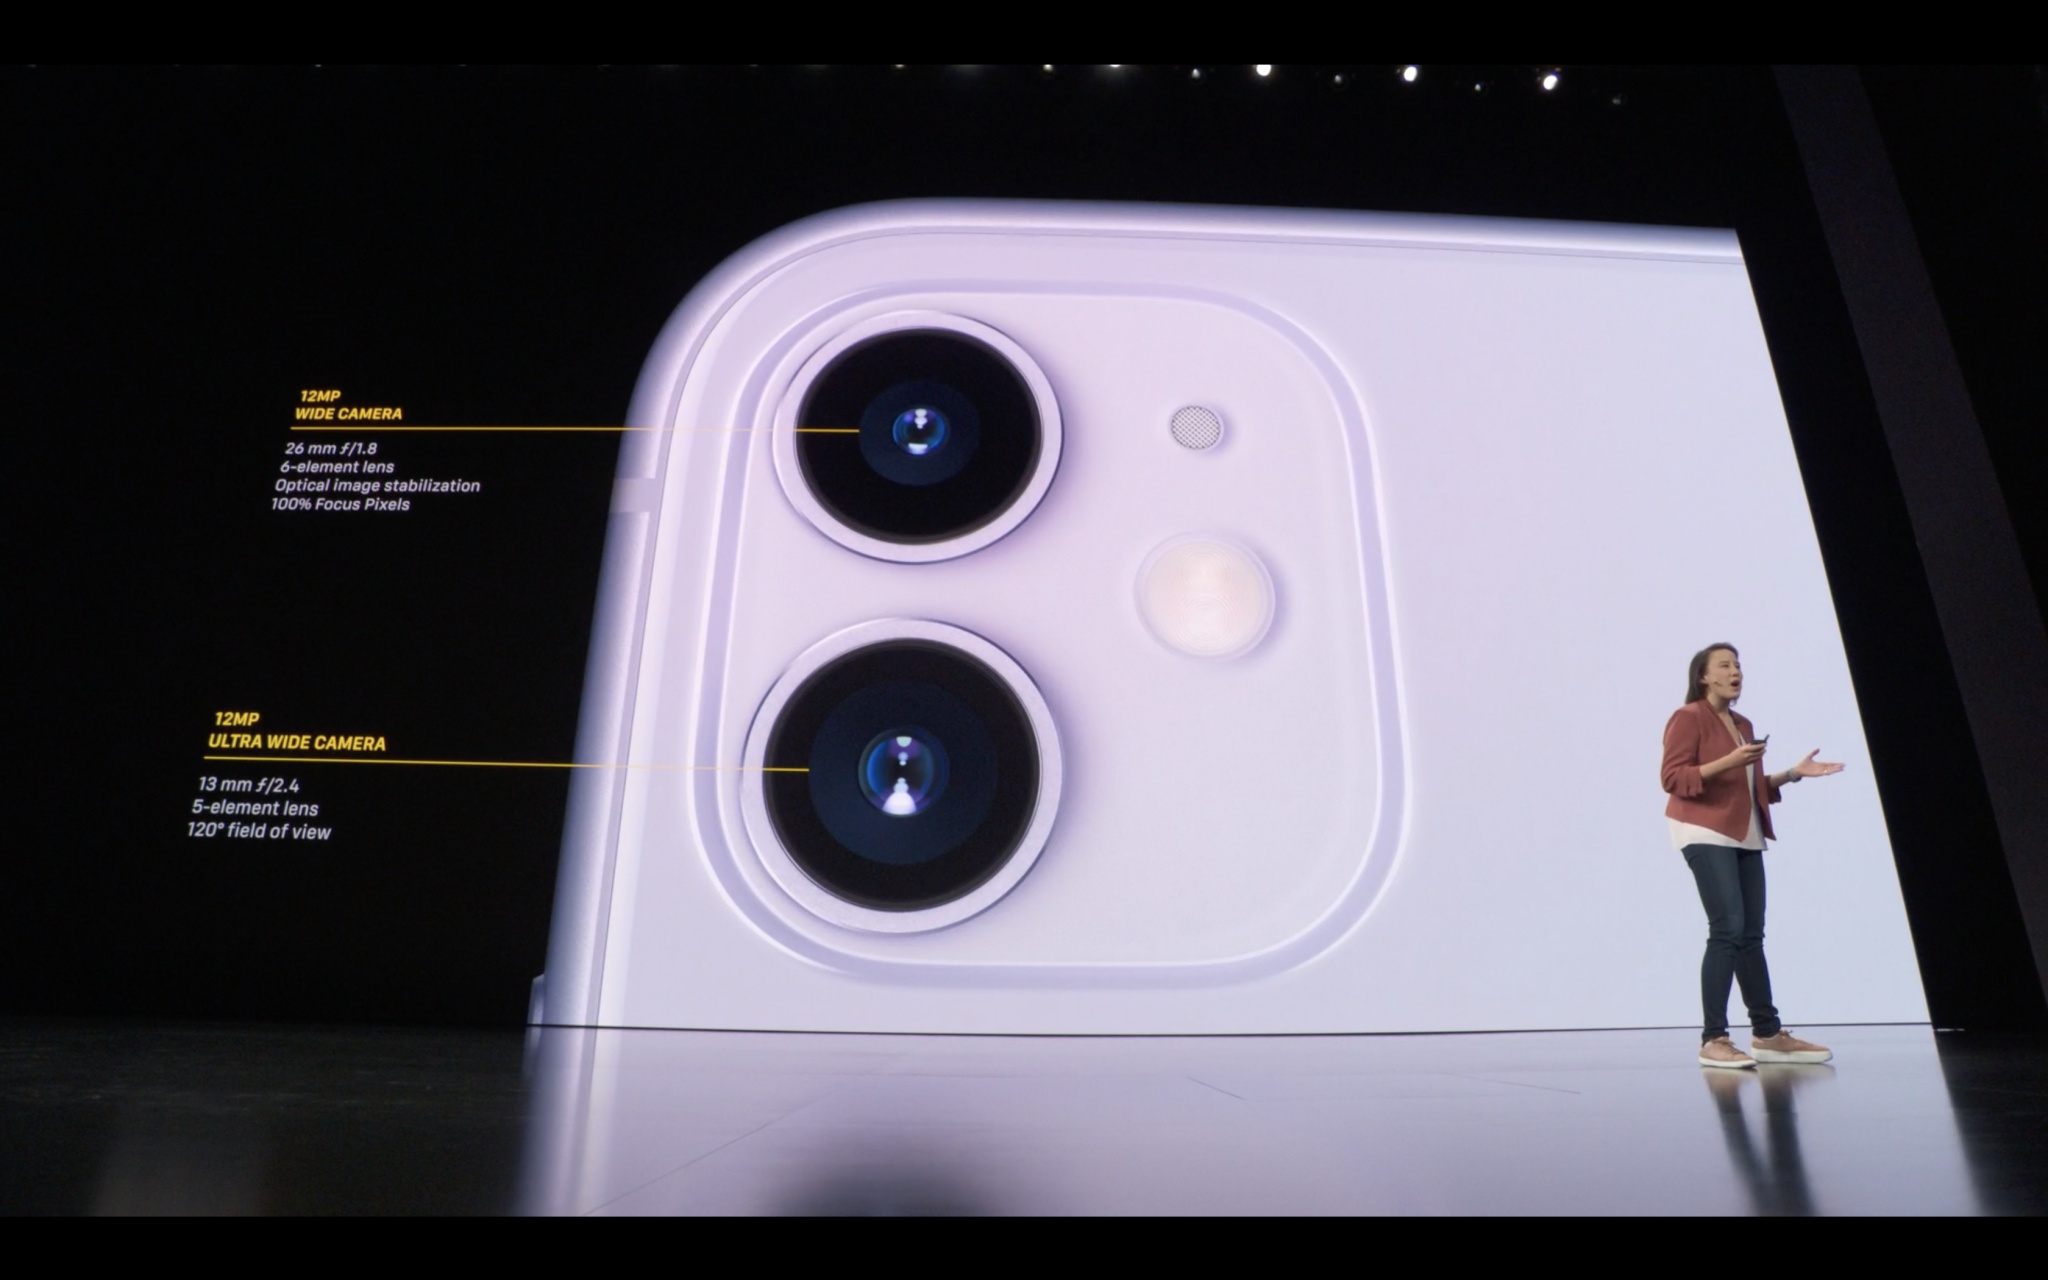 Apple thay iphone xr bằng iphone 11 chính thức 2 camera sau chụp đêm nightmode chip a13 - 2